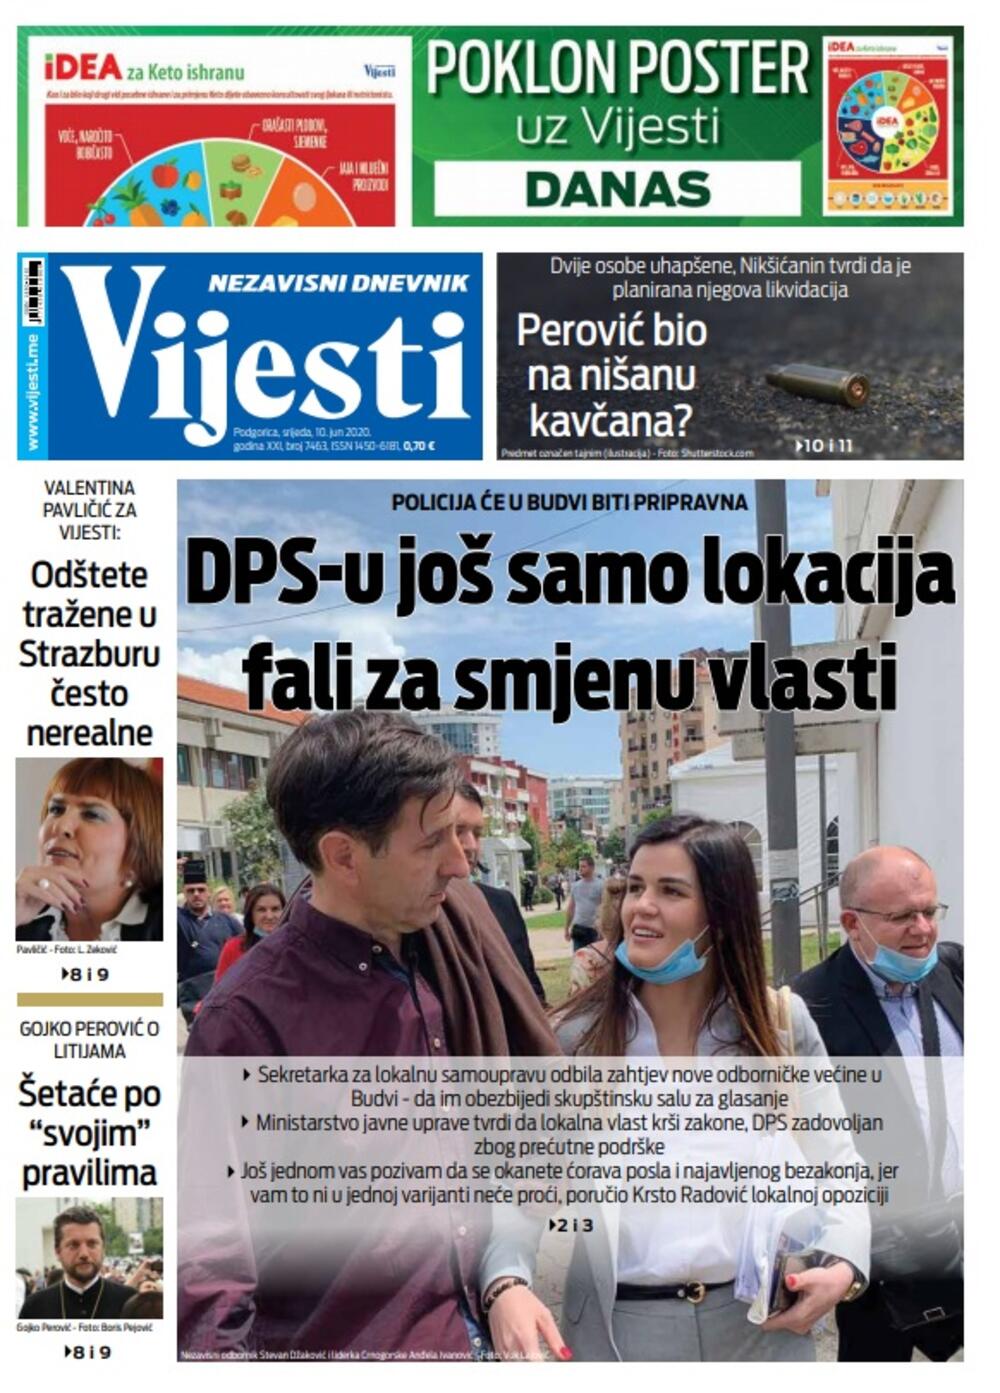 Naslovna strana "Vijesti" za srijedu 10. jun 2020. godine, Foto: Vijesti